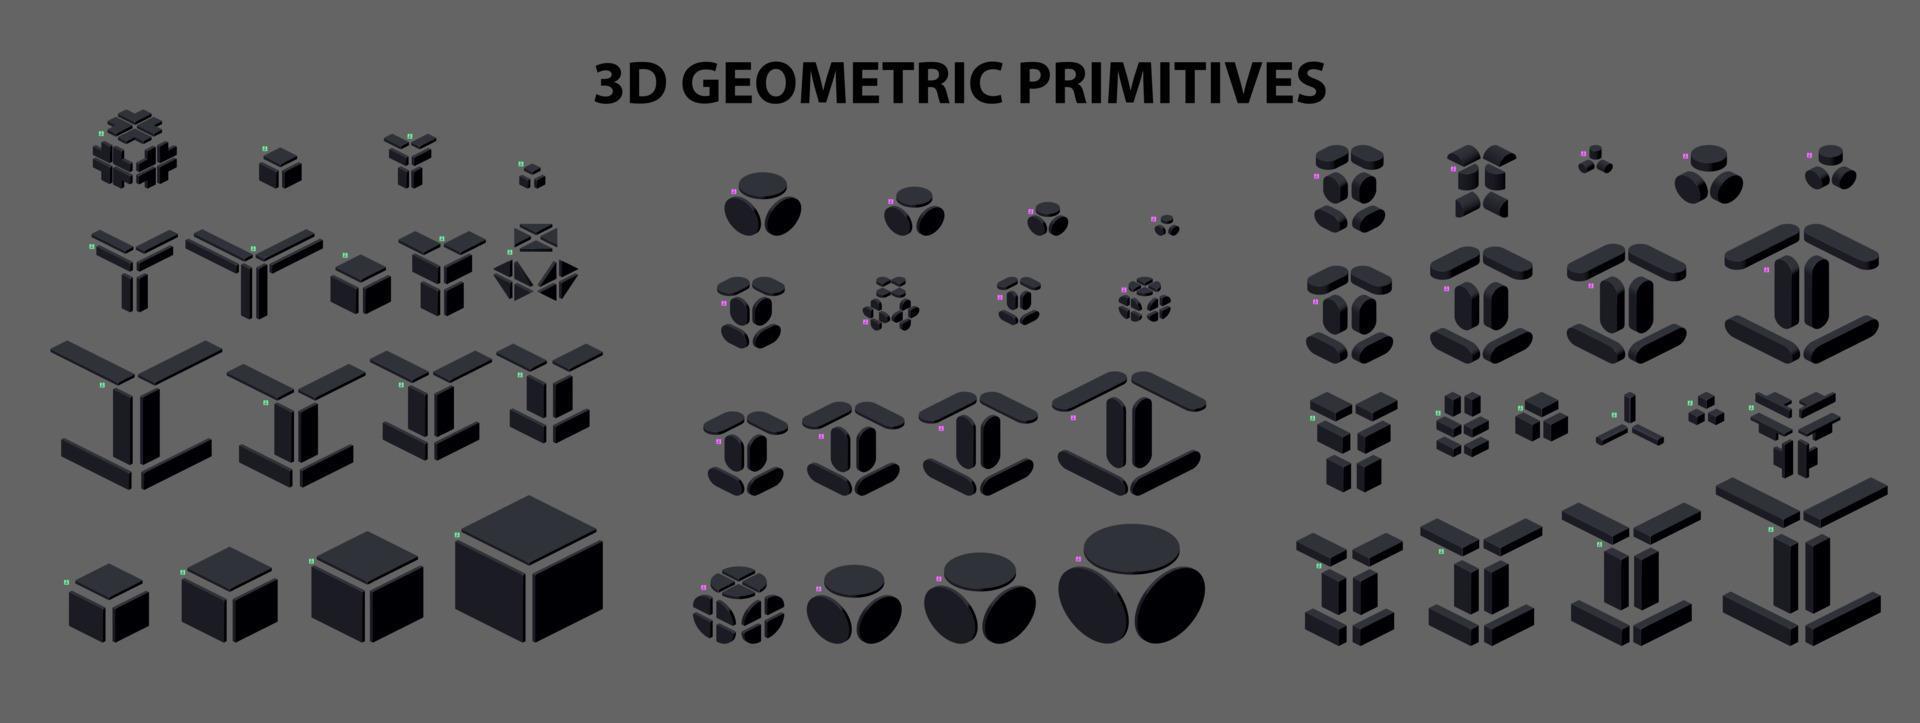 satz geometrischer primitiver 3d-figuren im isometrischen stil zur kombination in der konstruktion. vektorillustration. vektor